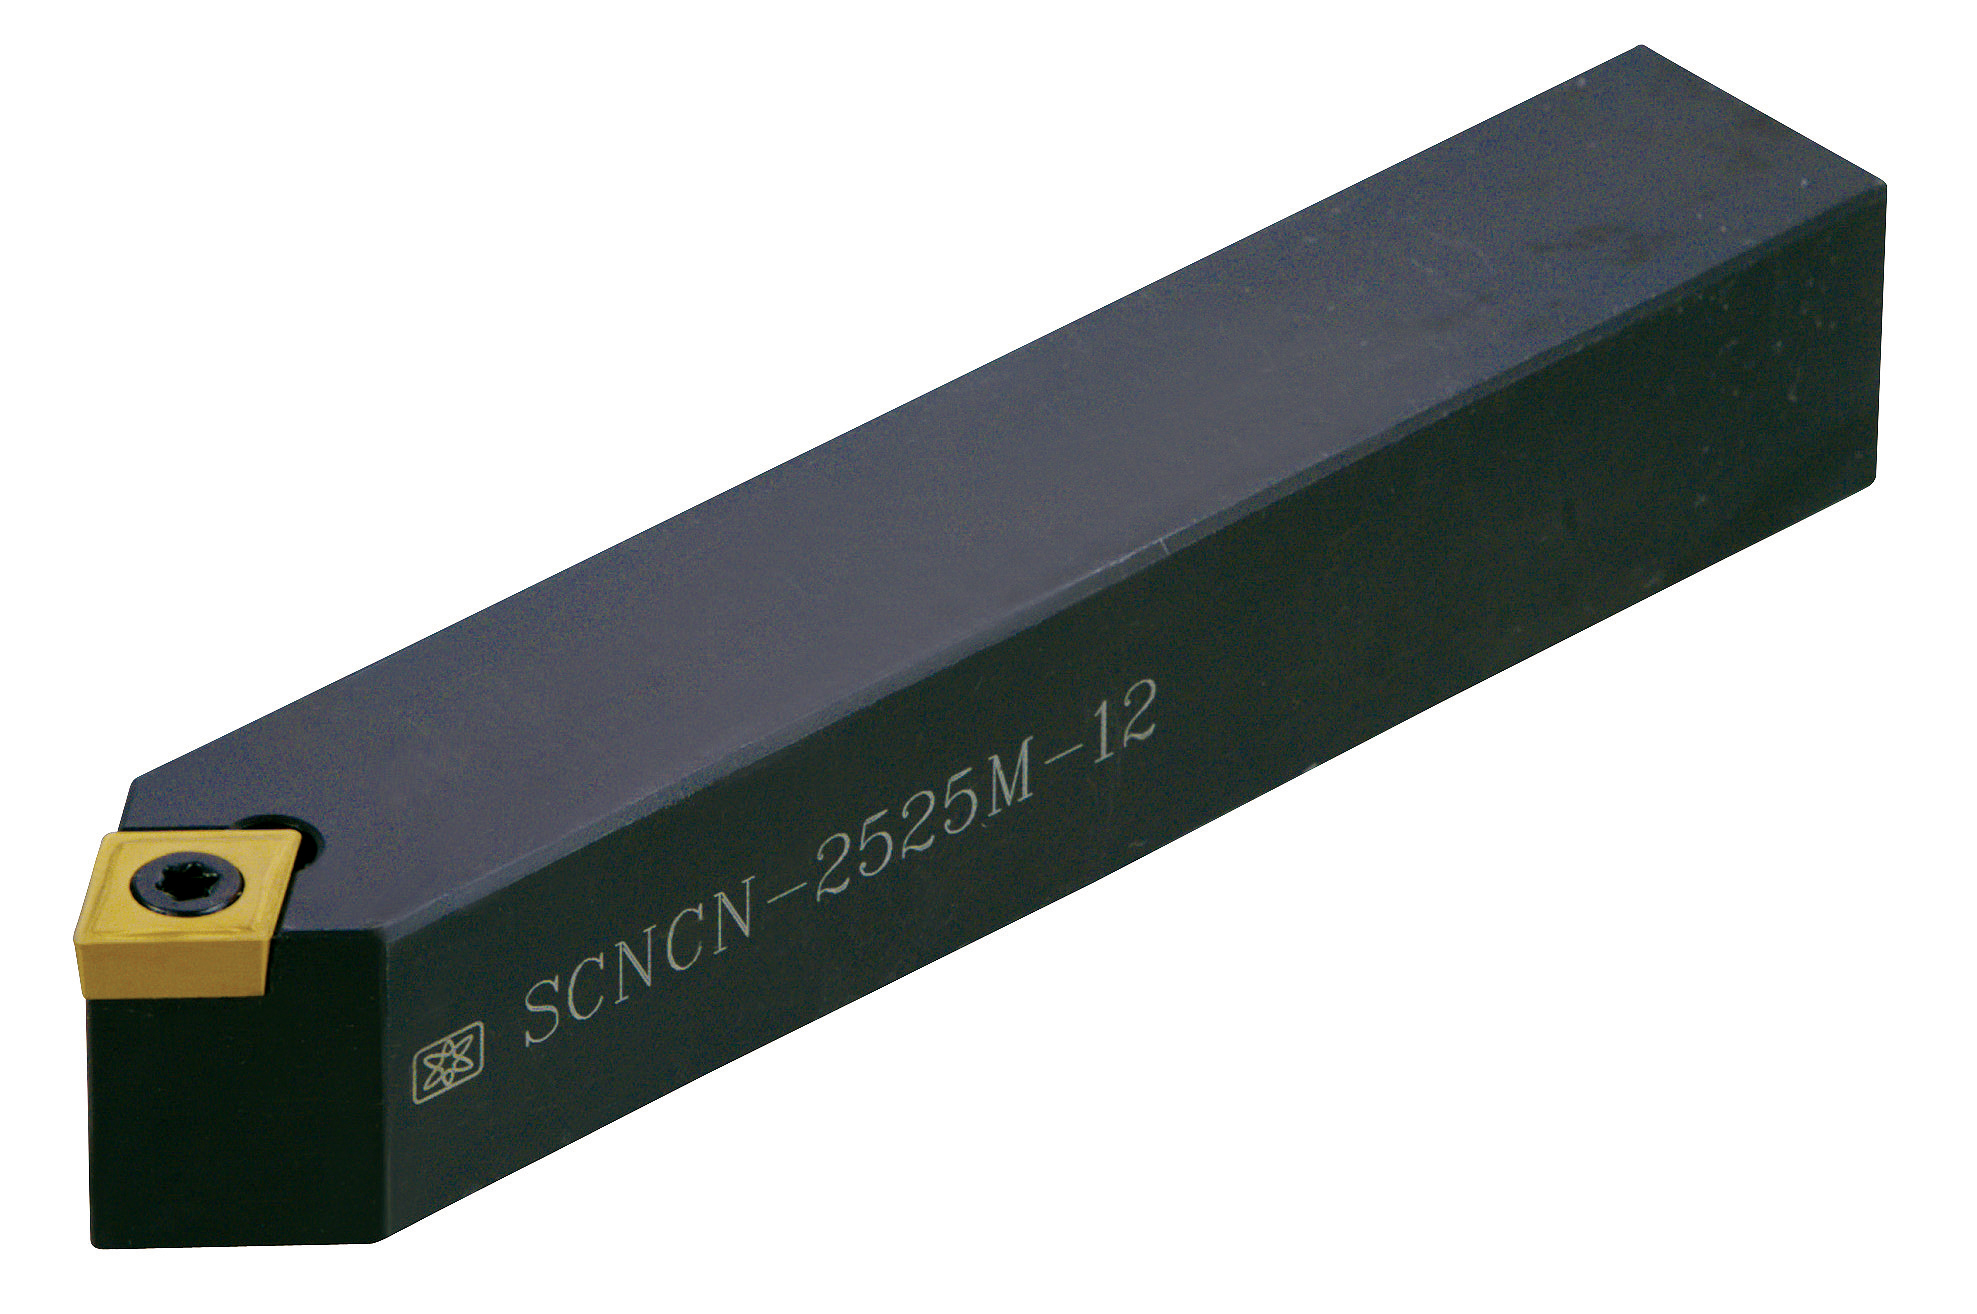 Catalog|SCNCN (CCMT0602/CCMT09T3/CCMT1204) External Turning Tool Holder